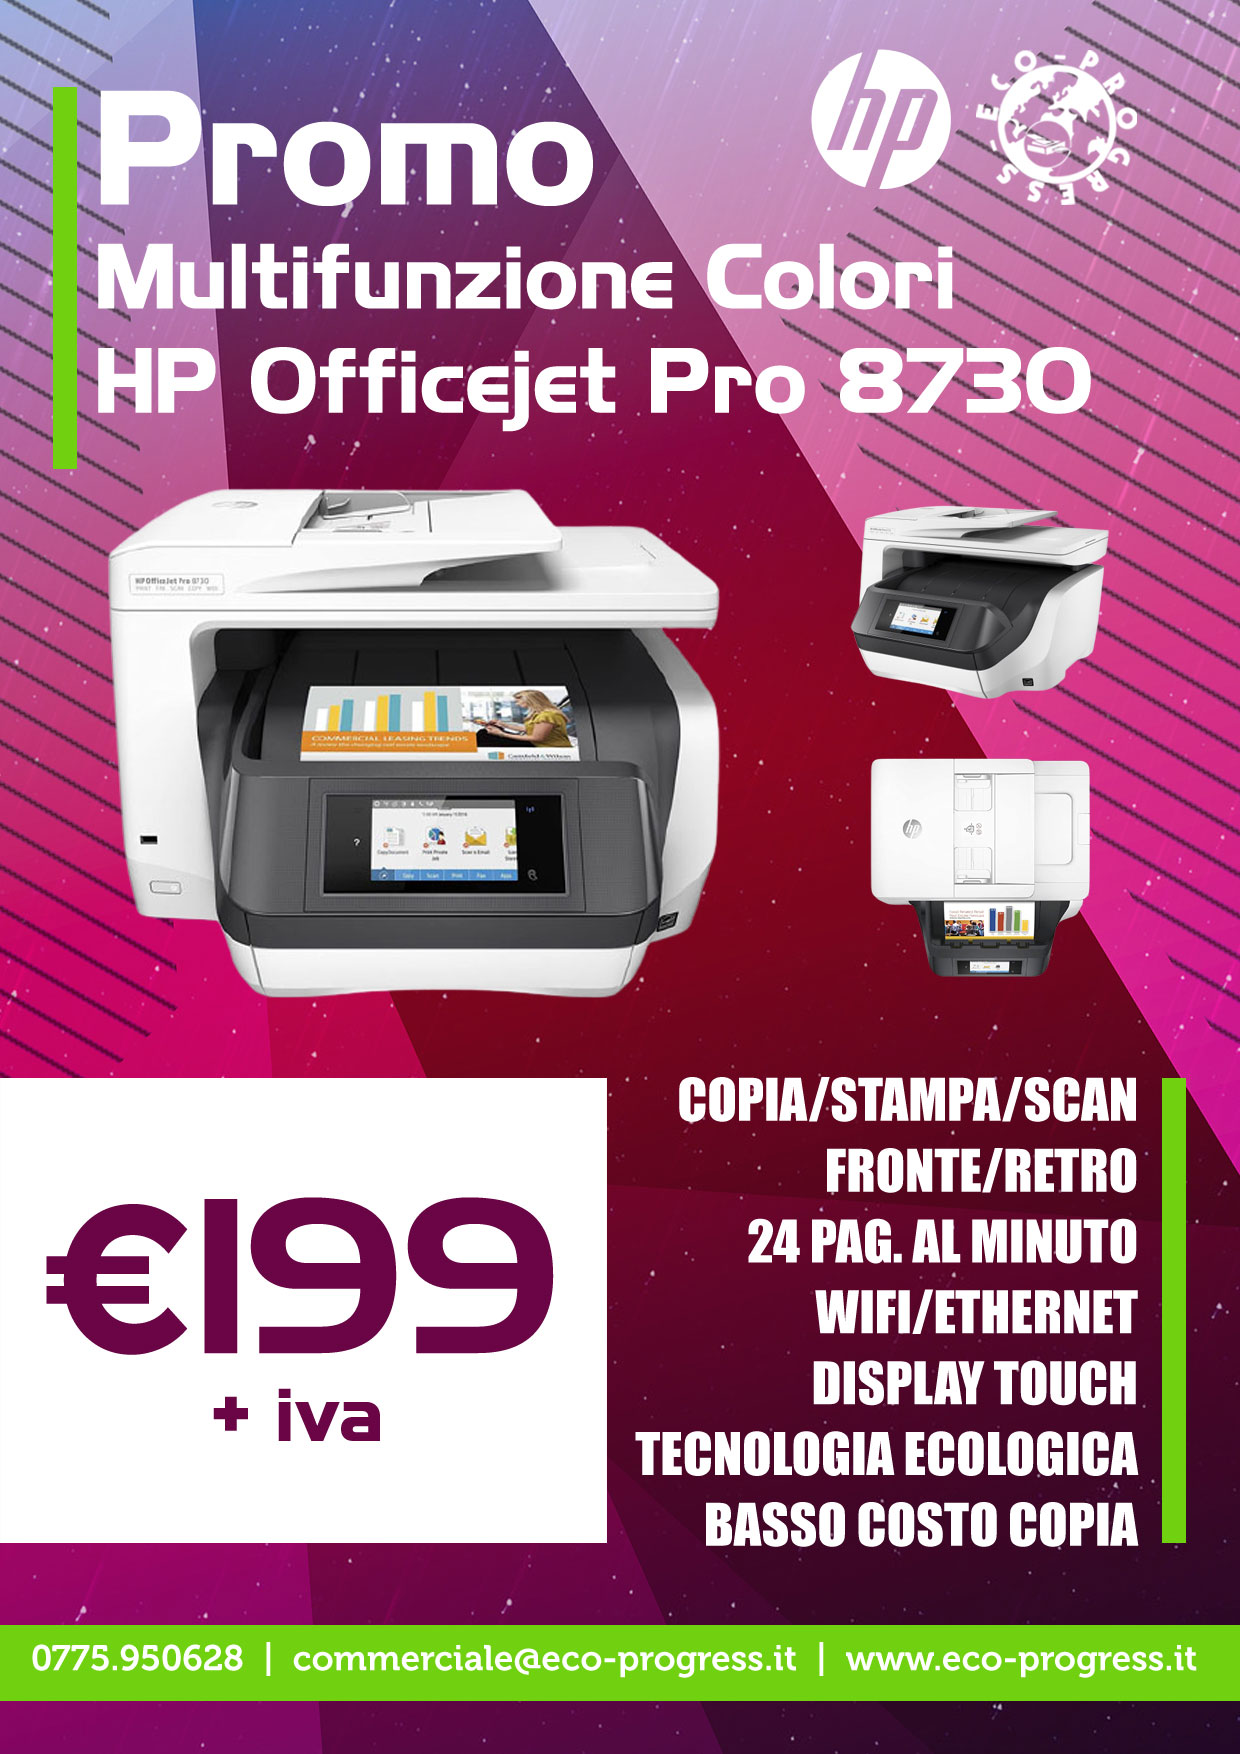 Promo HP Officejet Pro 8730 - Multifunzione a colori